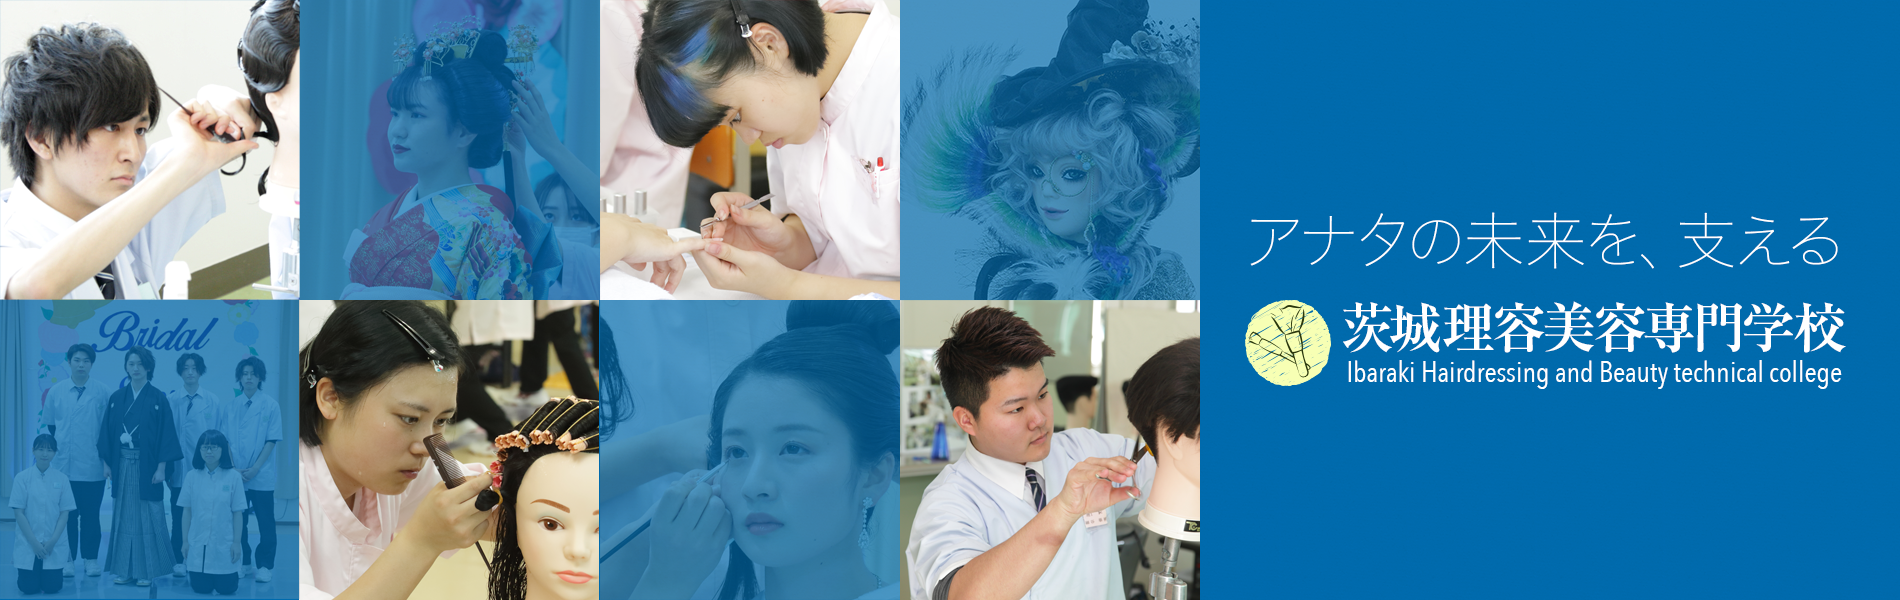 茨城理容美容専門学校には理容科、美容科、２つの学科があります。